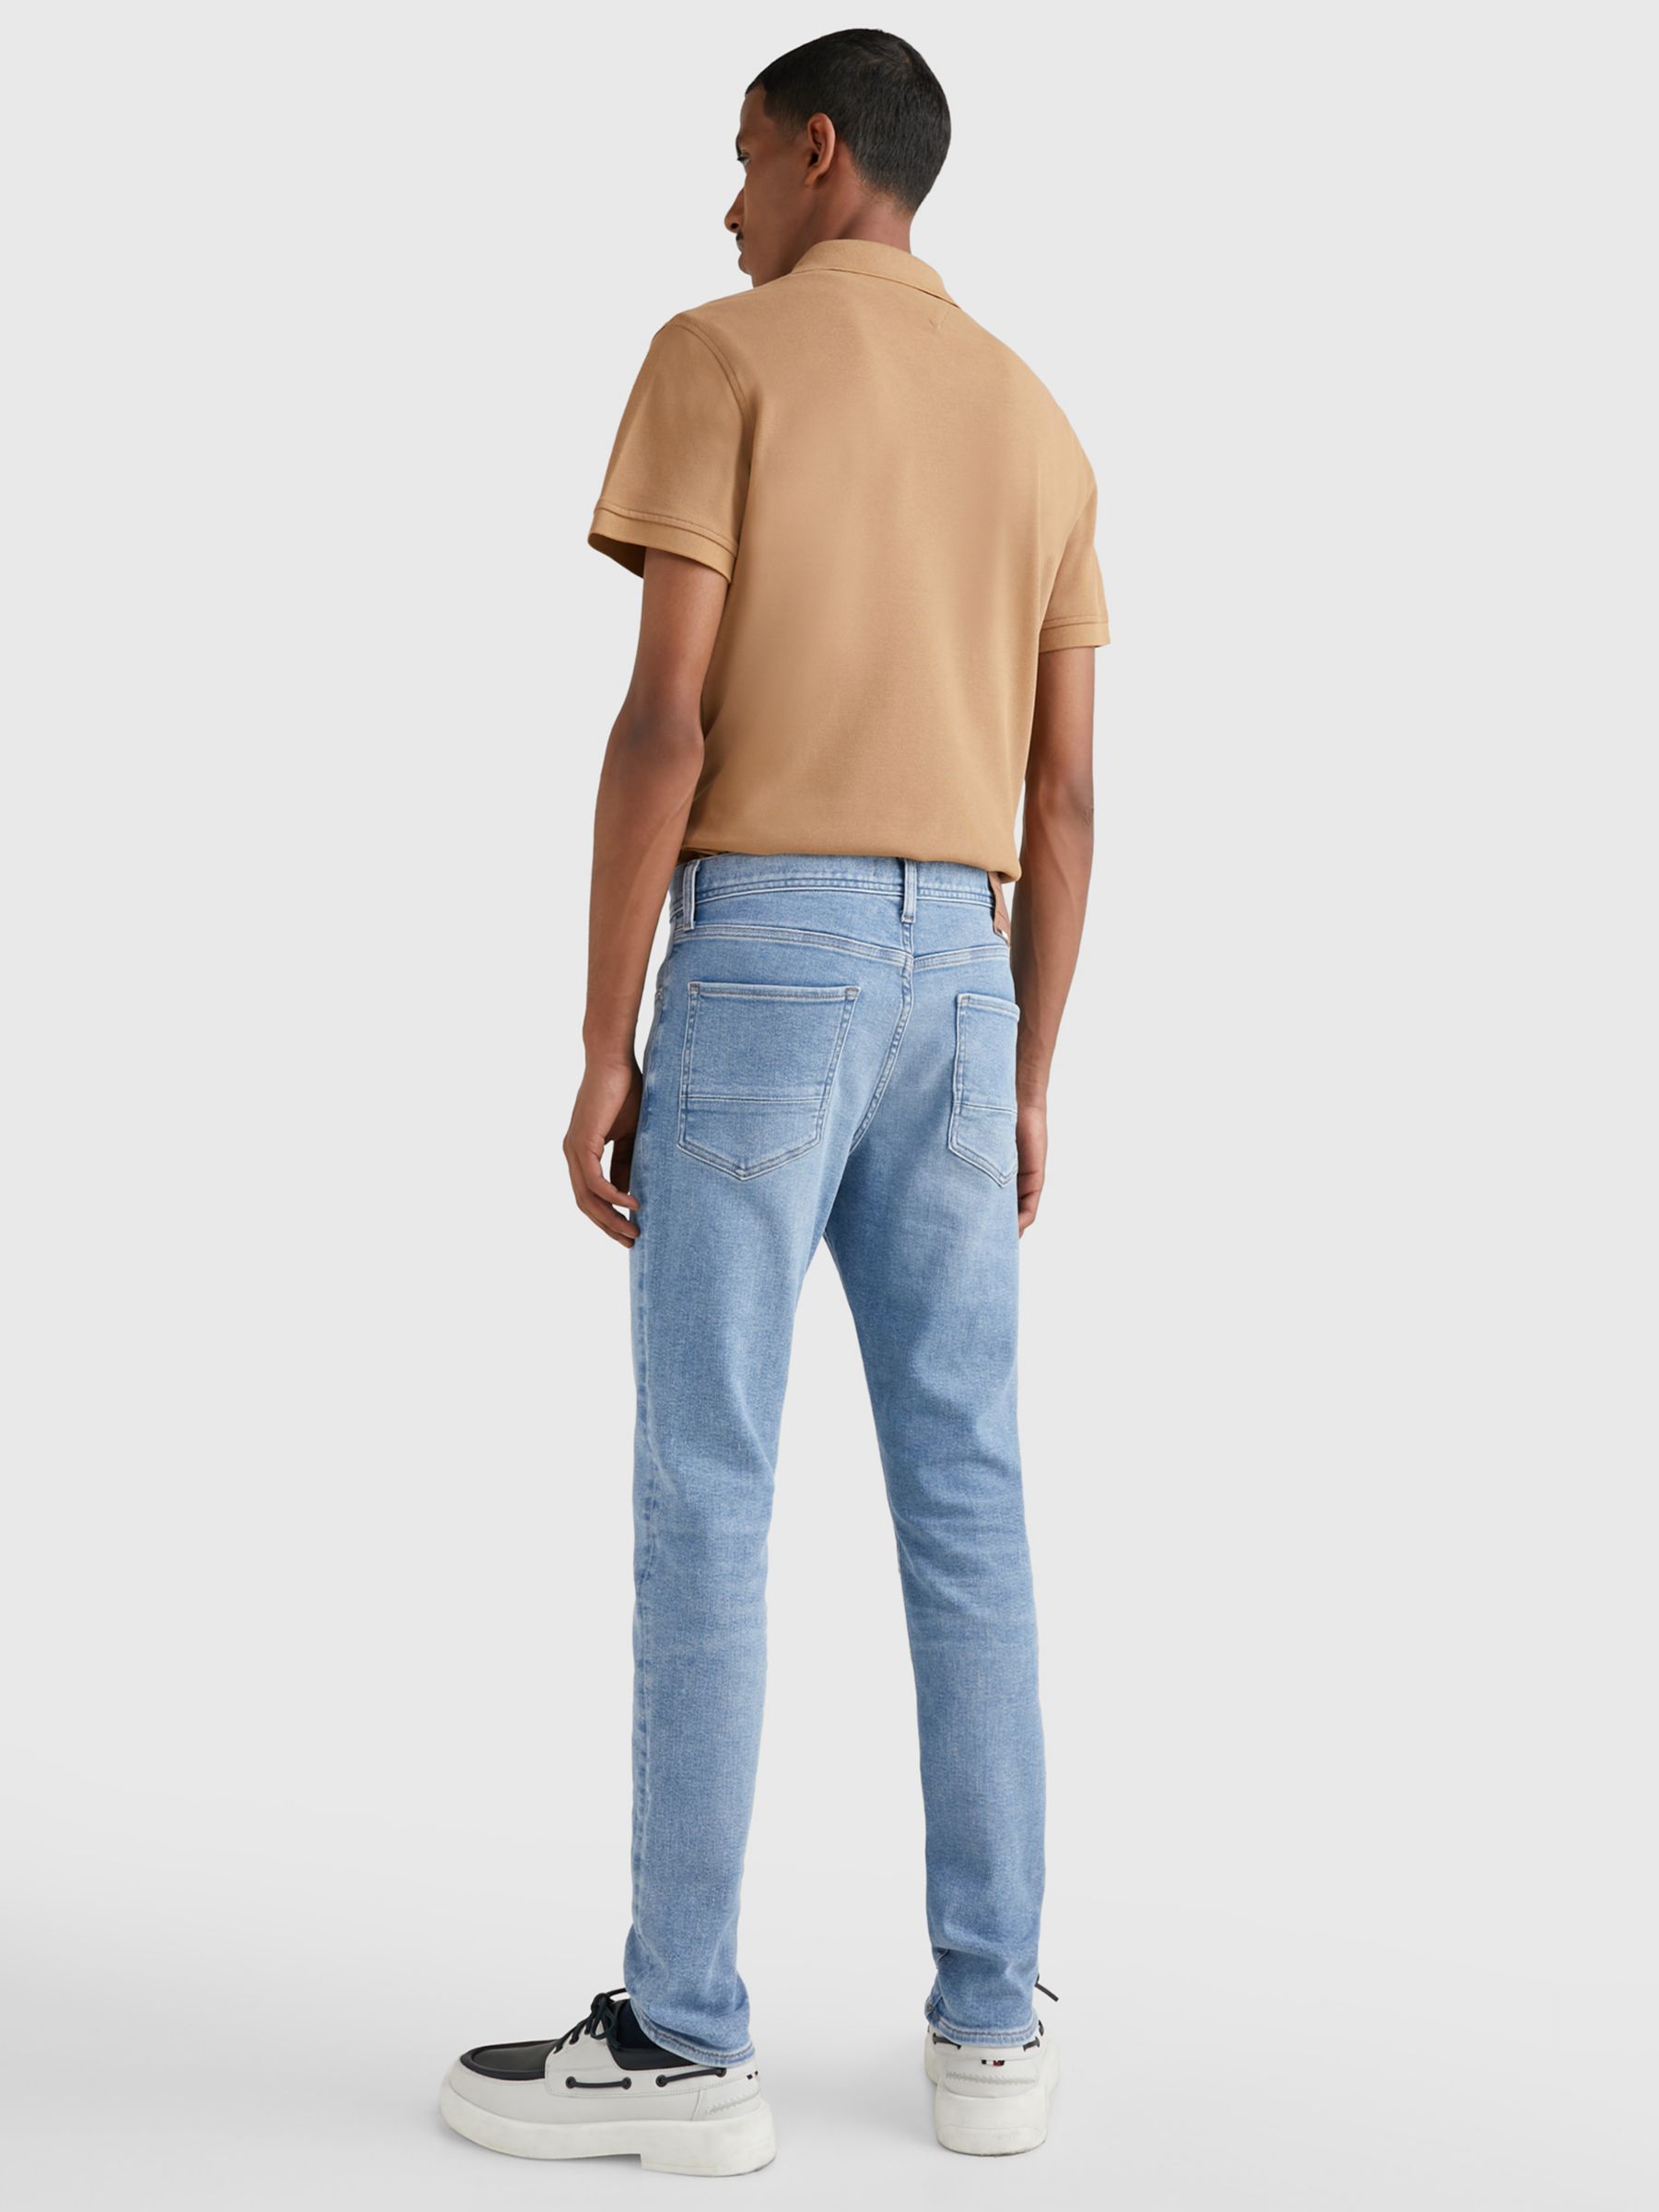 Buy Tommy Hilfiger Extra Slim Layton Jeans, Blue Online at johnlewis.com